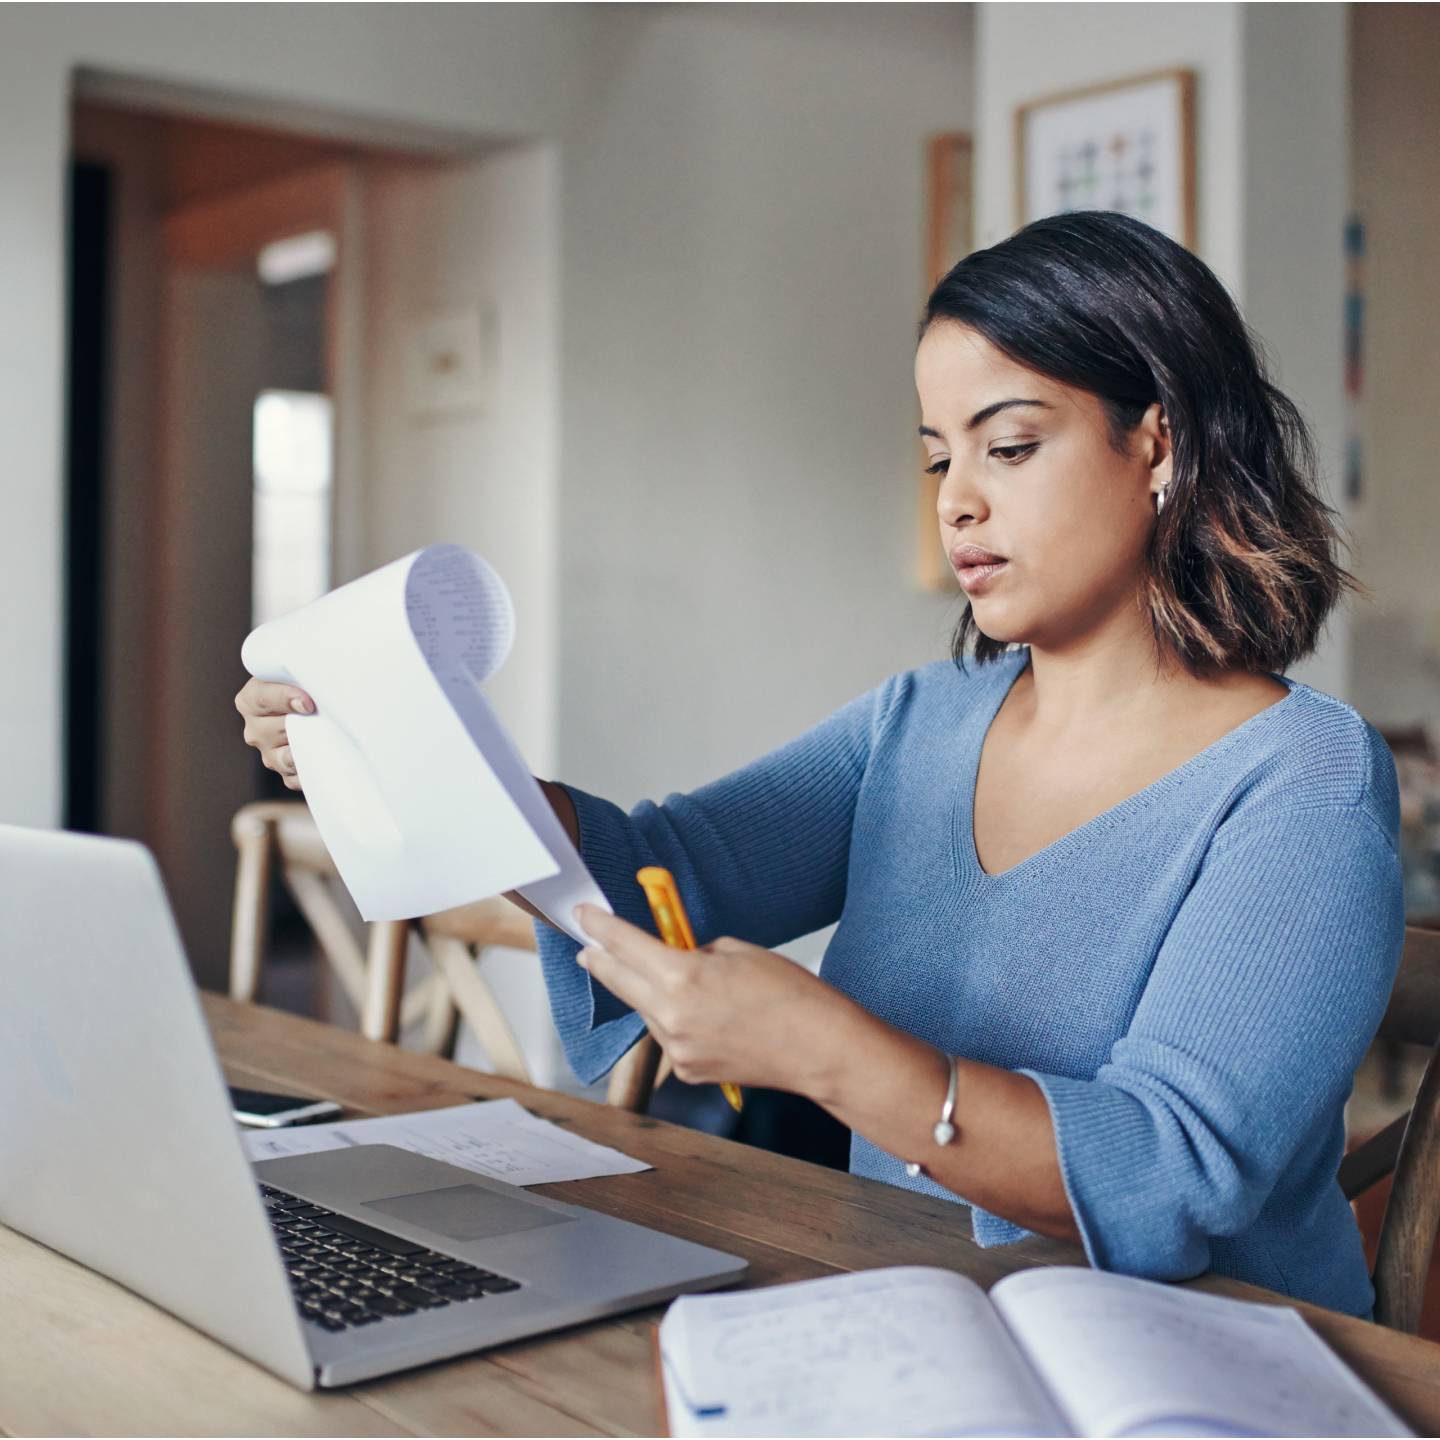 Vrouw die op een laptop werkt en papieren documenten bekijkt.